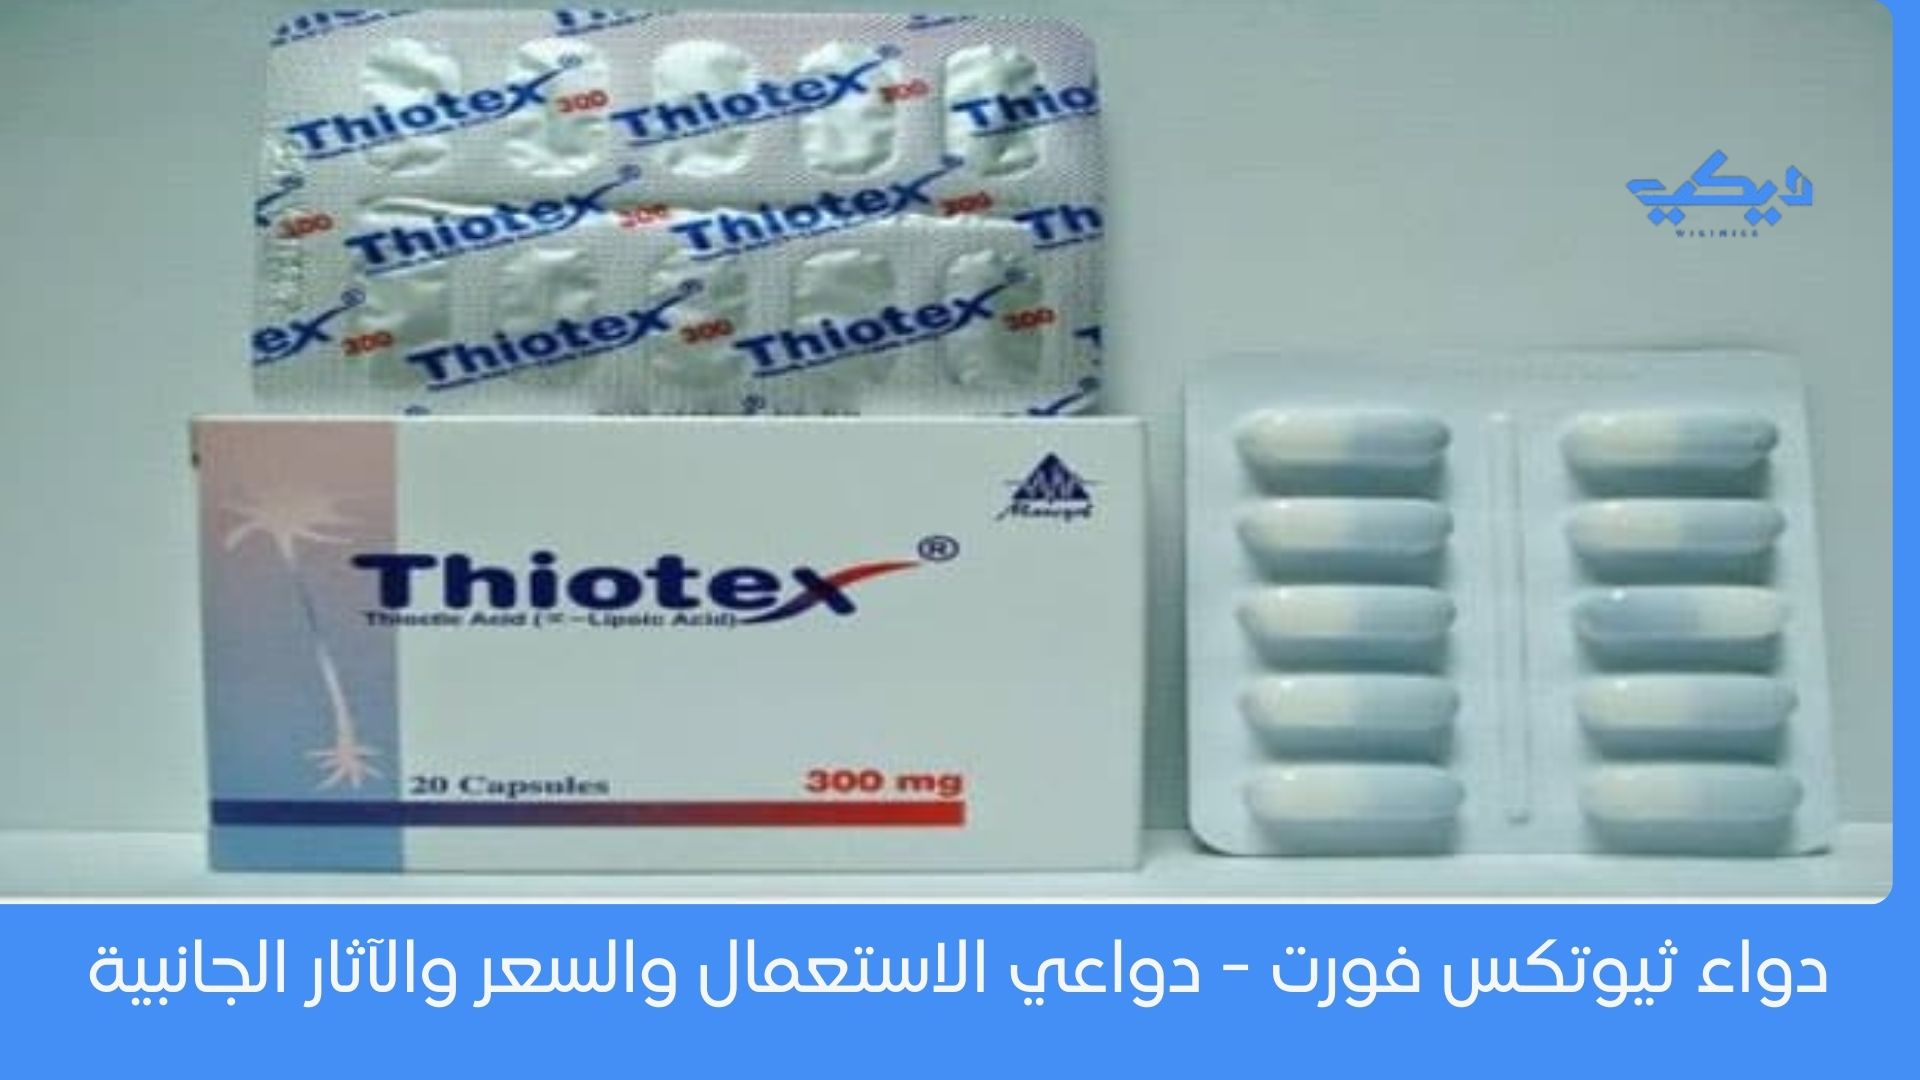 دواء ثيوتكس فورت - دواعي الاستعمال والسعر والآثار الجانبية